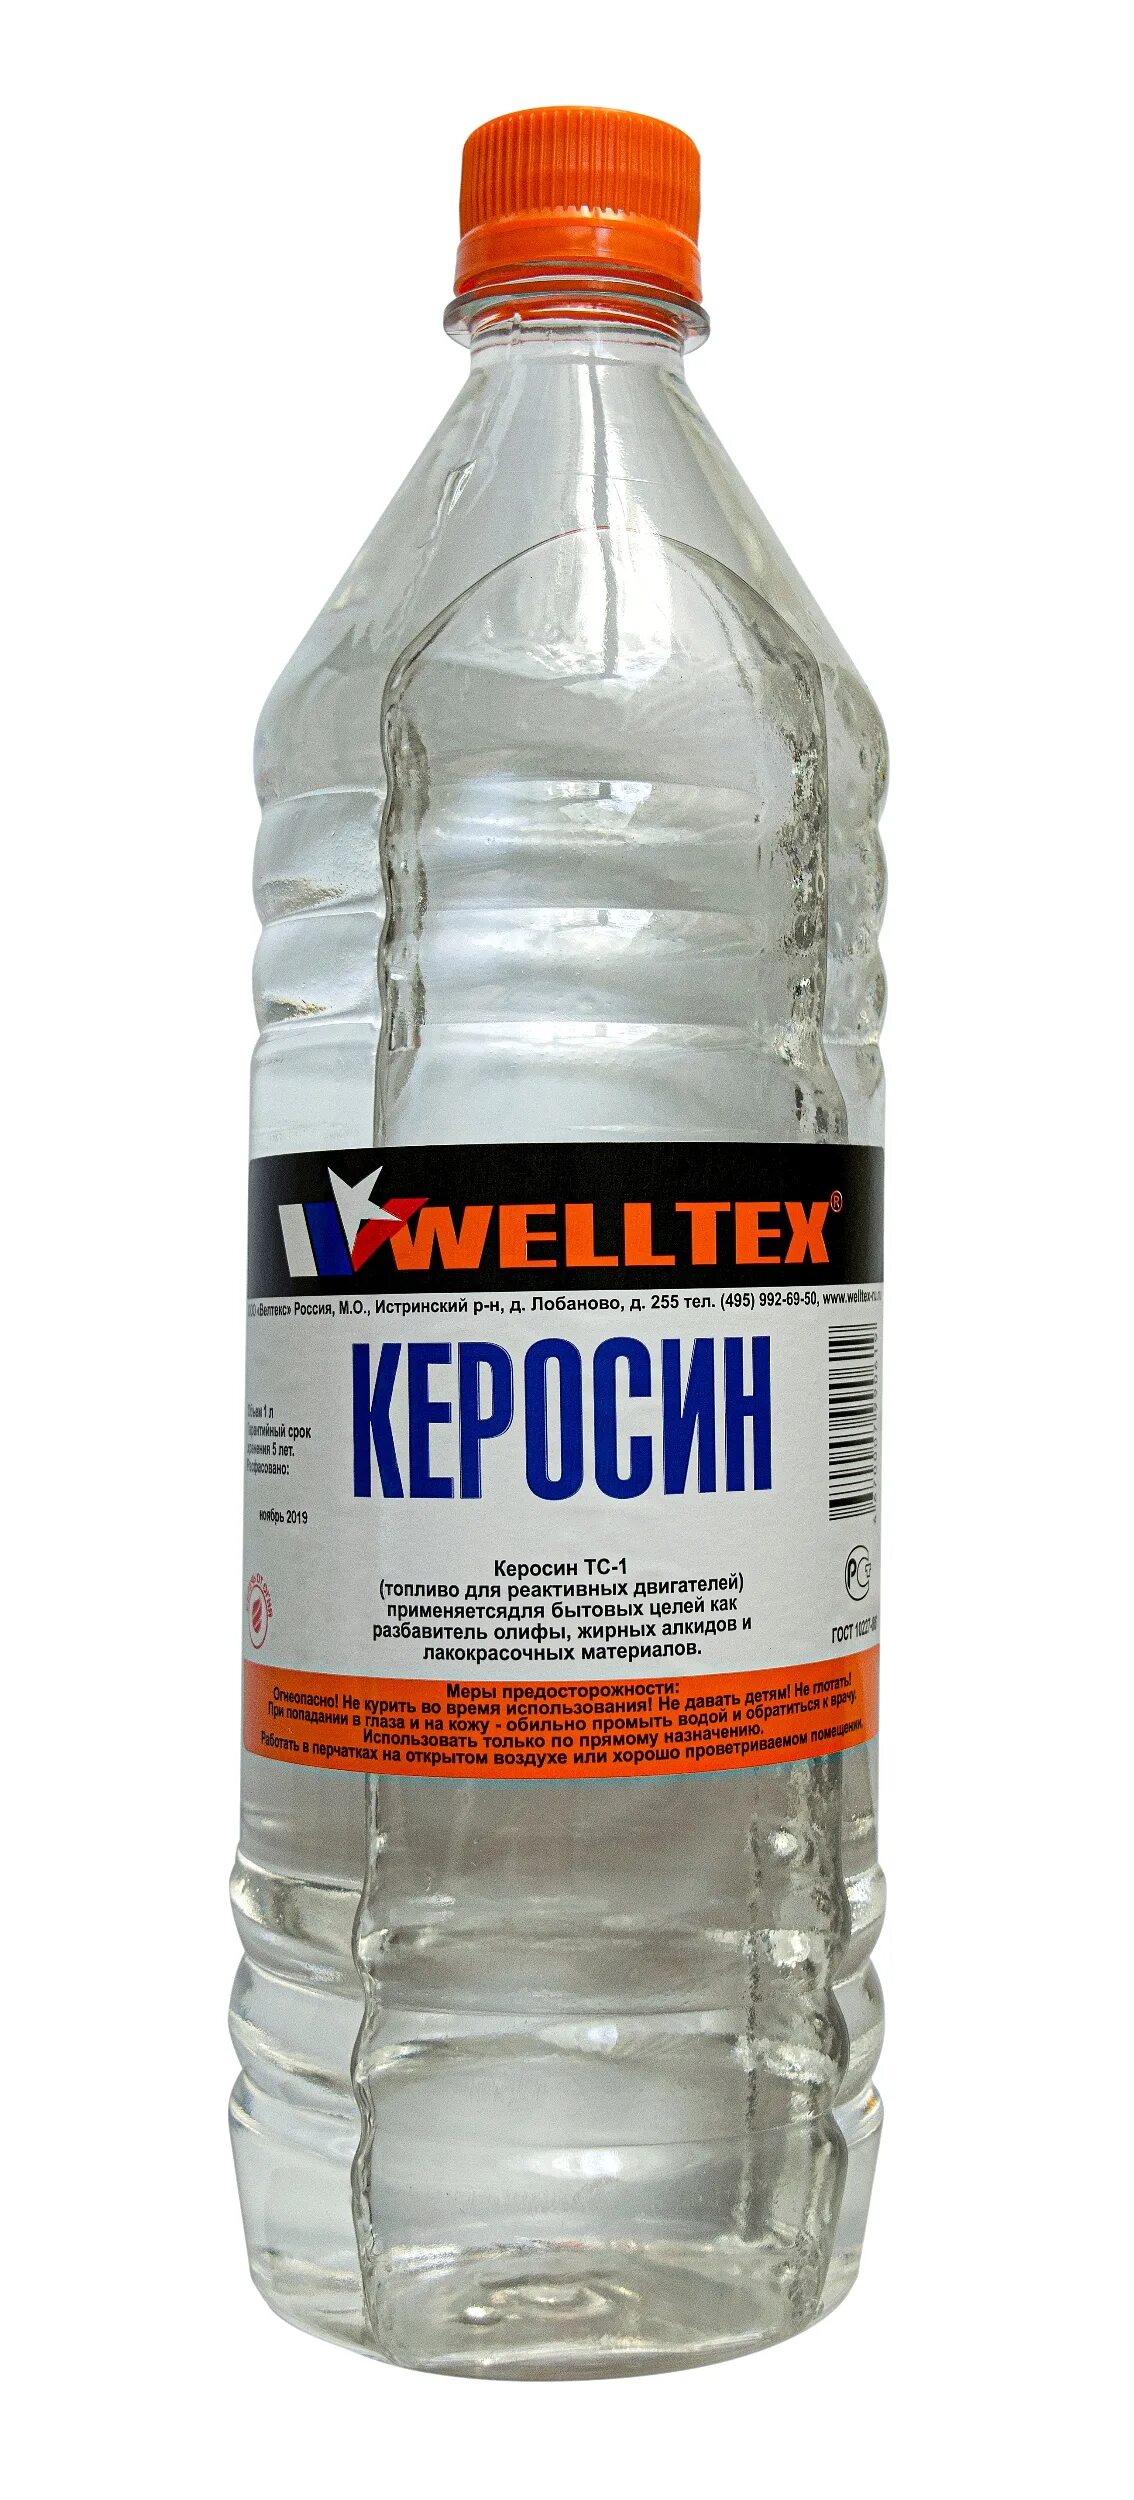 Welltex керосин (1л.). Керосин 1л Welltex Welltex 4670007990619. Сольвент Welltex нефтяной 1 л. Керосин ТС-1 ГОСТ. Можно купить керосин